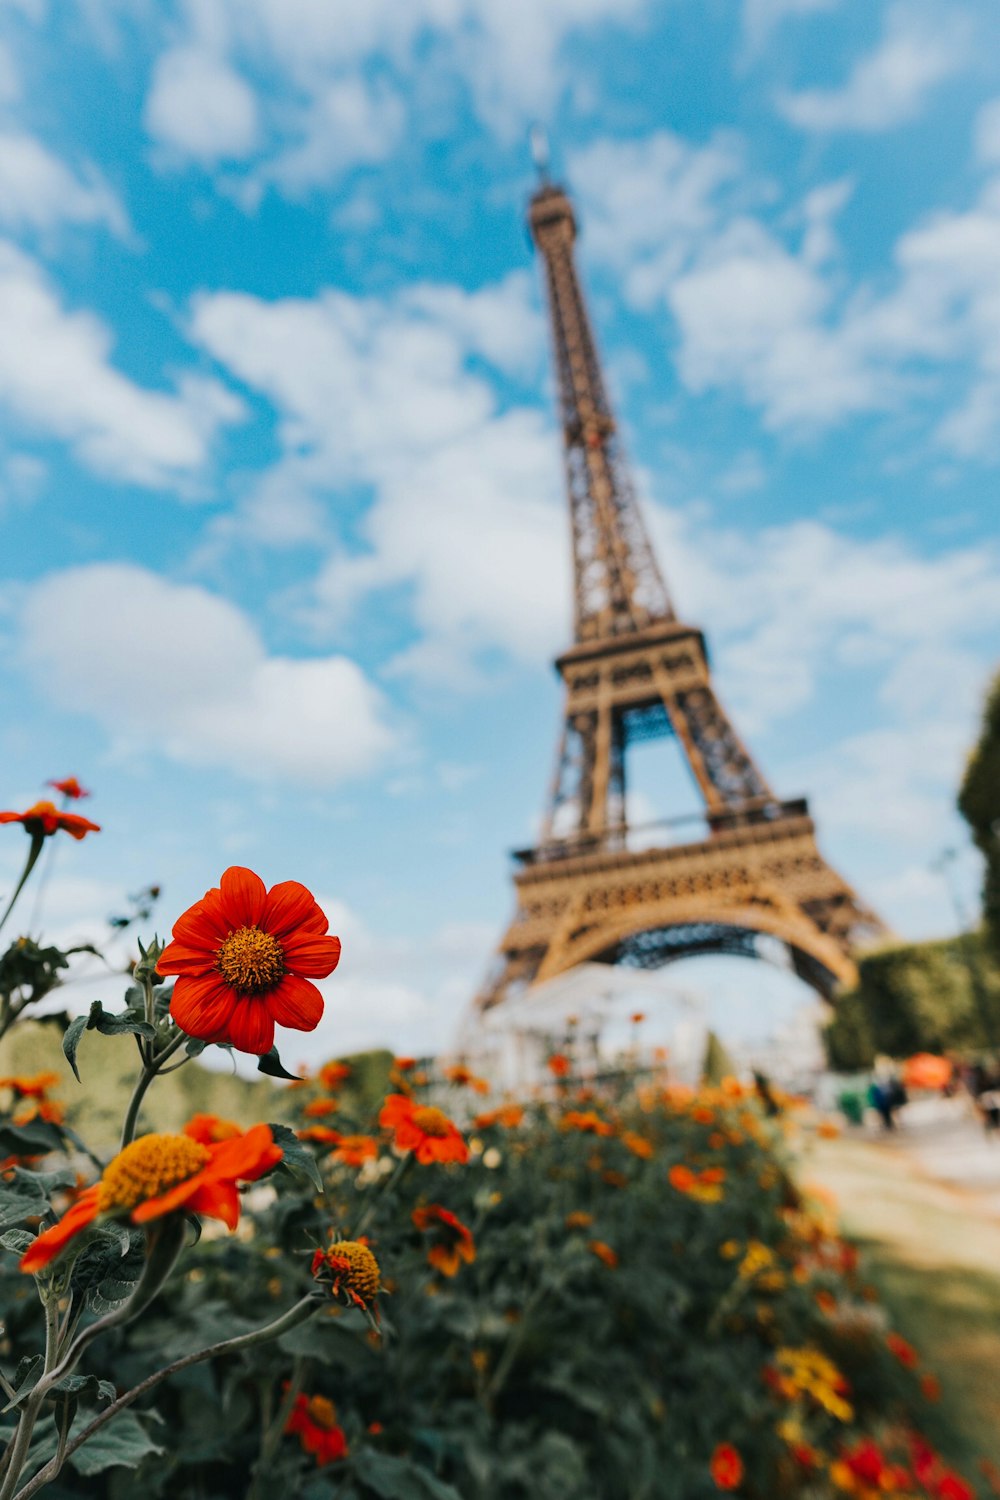 Blumengarten in der Nähe des Eiffelturms